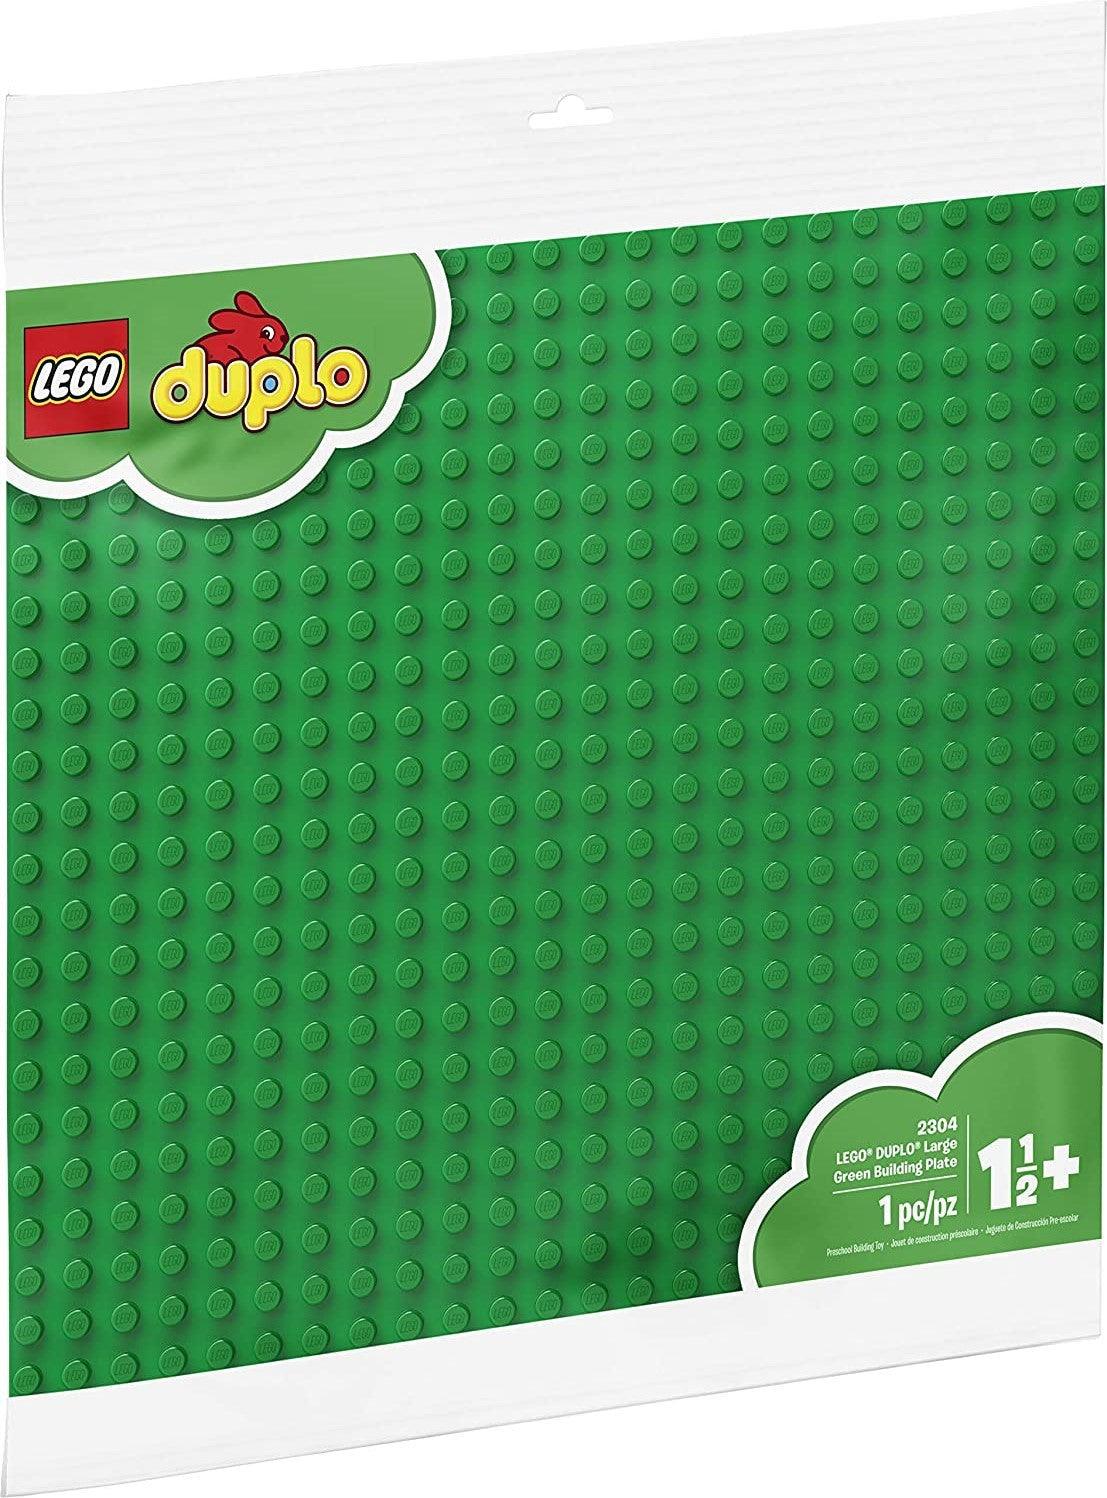 LEGO Large Building Plate 2304 DUPLO LEGO DUPLO @ 2TTOYS LEGO €. 14.99